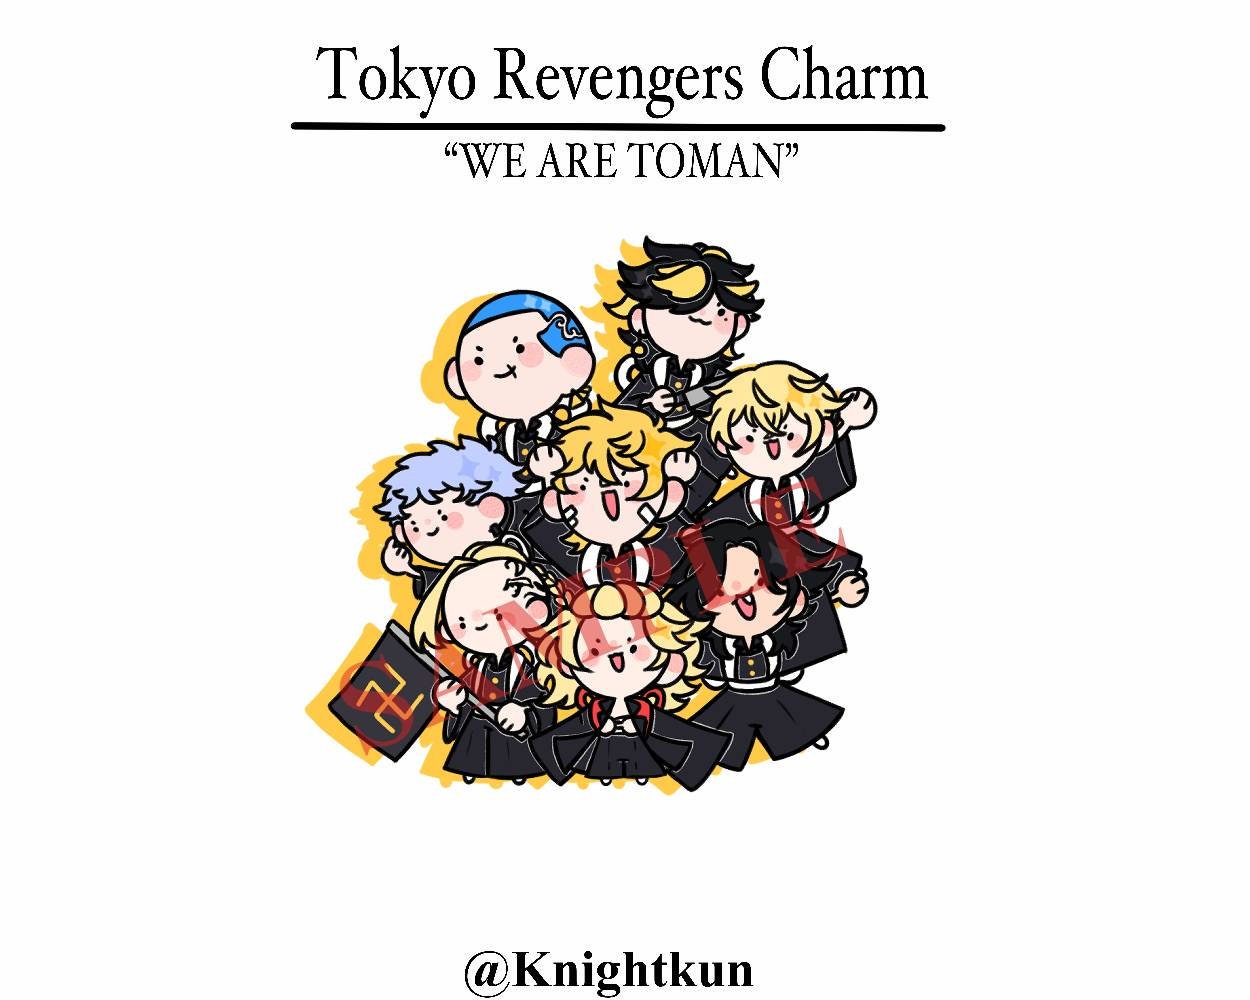 Tokyo Revengers Brasil on Instagram: “Mini anime original Chibi